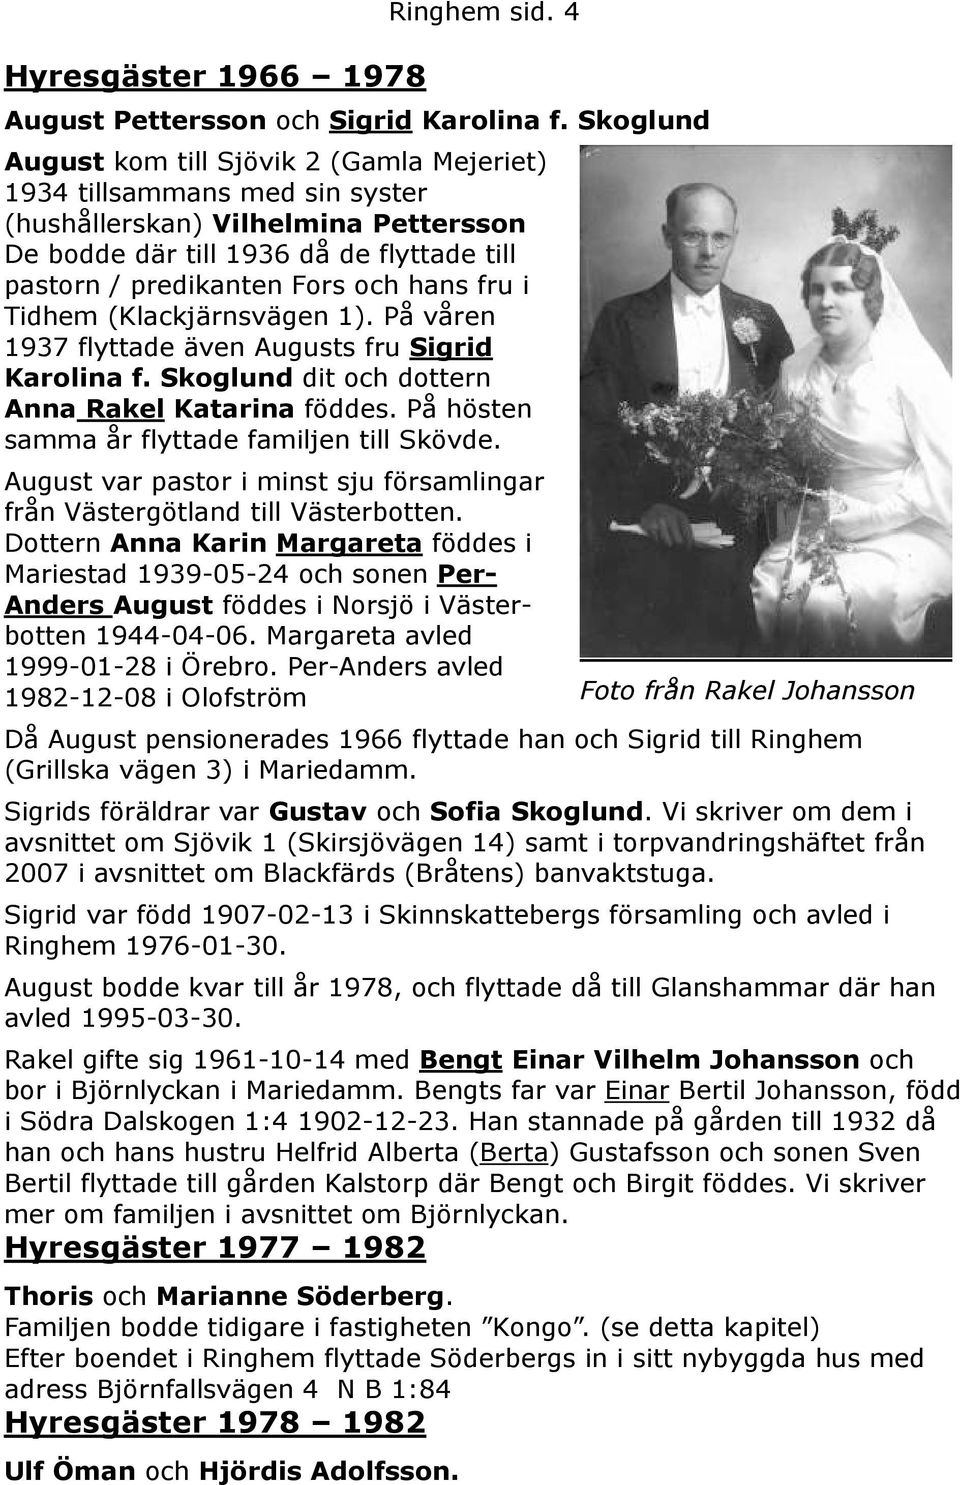 fru i Tidhem (Klackjärnsvägen 1). På våren 1937 flyttade även Augusts fru Sigrid Karolina f. Skoglund dit och dottern Anna Rakel Katarina föddes. På hösten samma år flyttade familjen till Skövde.